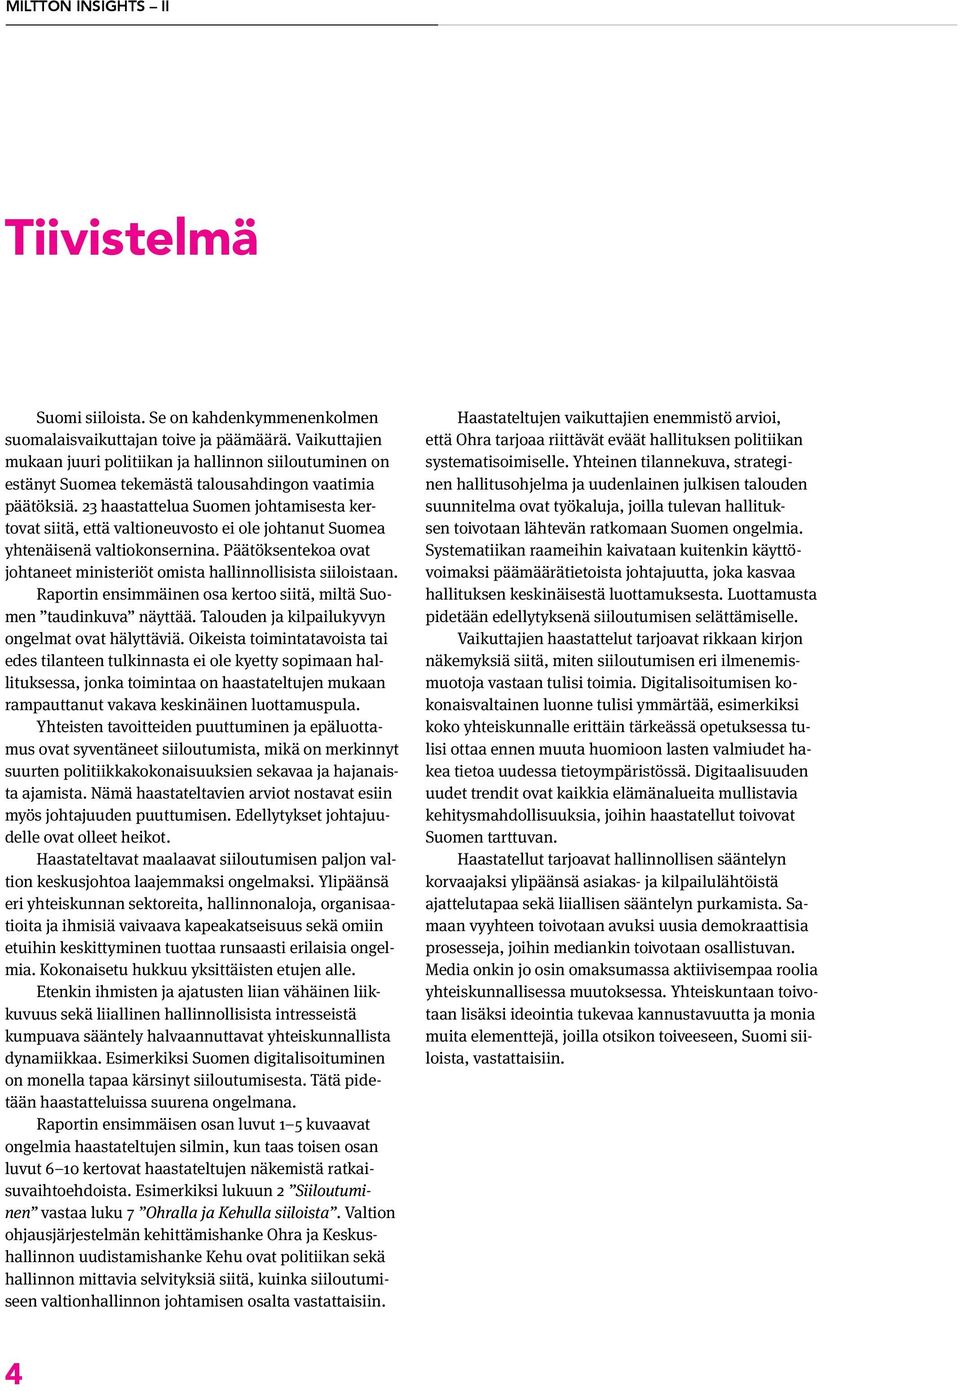 23 haastattelua Suomen johtamisesta kertovat siitä, että valtioneuvosto ei ole johtanut Suomea yhtenäisenä valtiokonsernina.